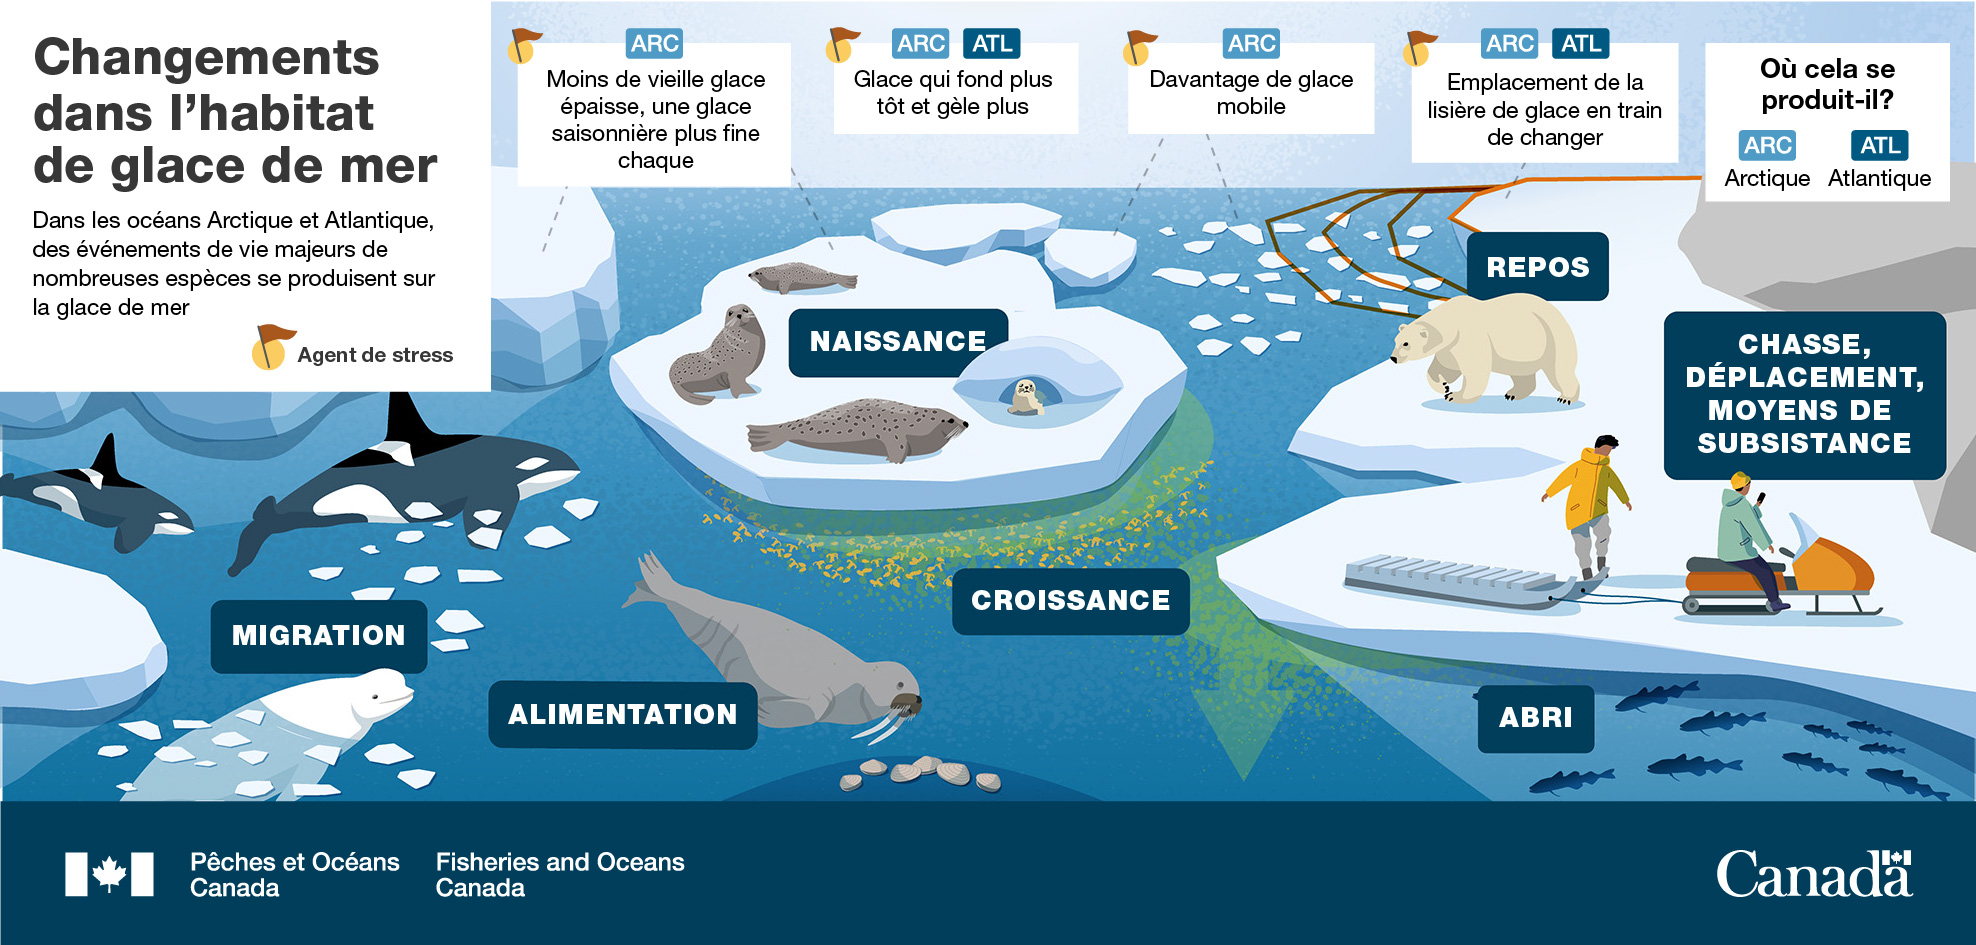 Infographie : Changements dans l’habitat de glace de mer